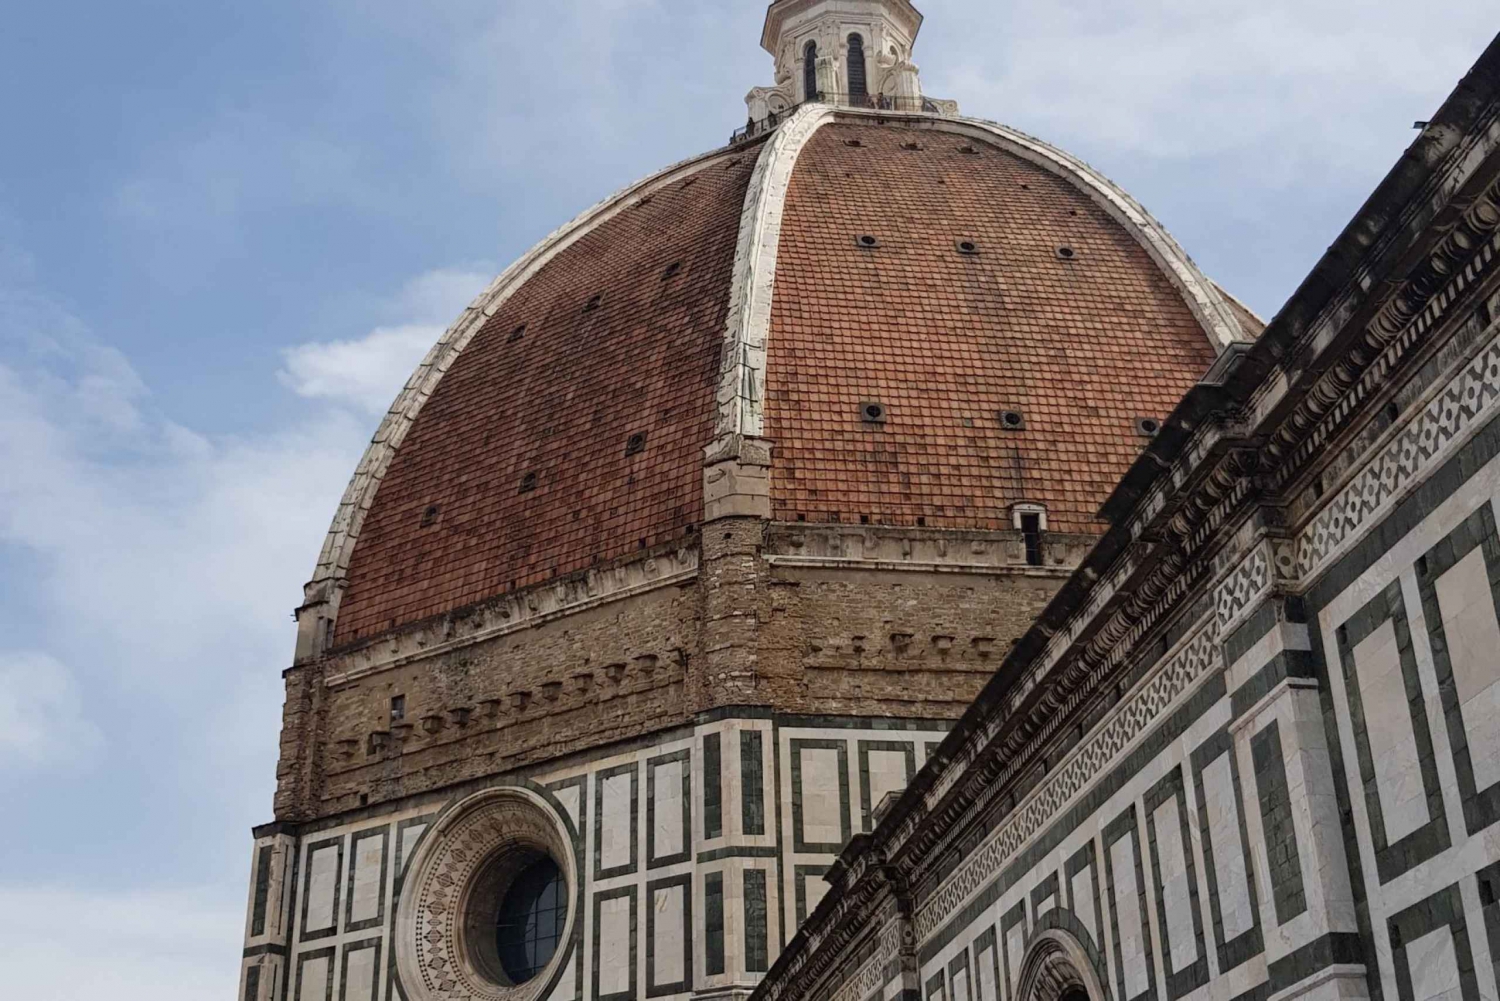 Florença: excursão sem filas pela catedral, terraços e cúpula